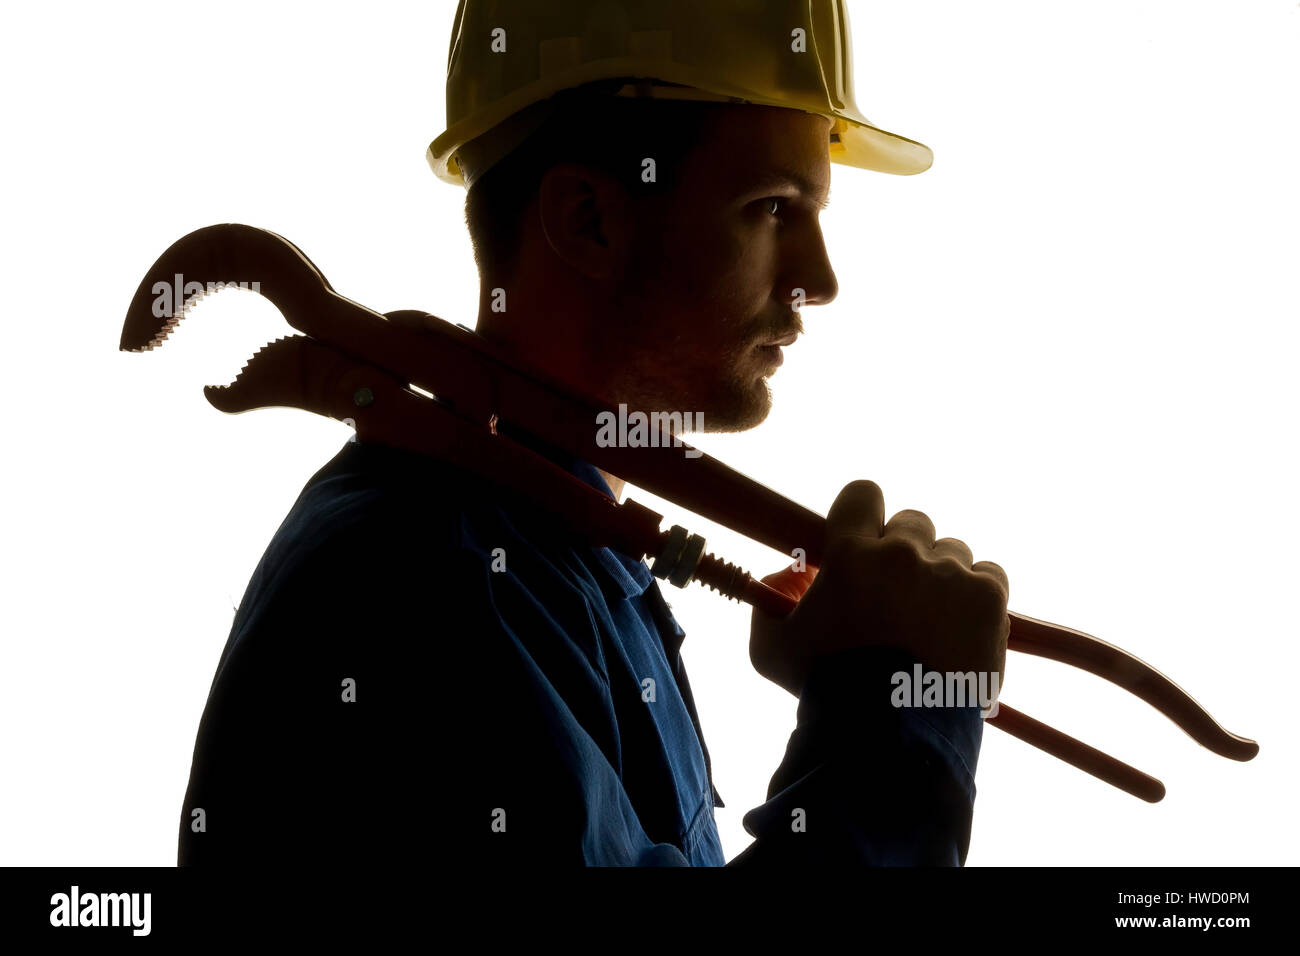 A worker in an industrial concern craftsman with tools in the hand, Ein Arbeiter in einem Gewerbebetrieb ( Handwerker ) mit Werkzeug in der Hand Stock Photo